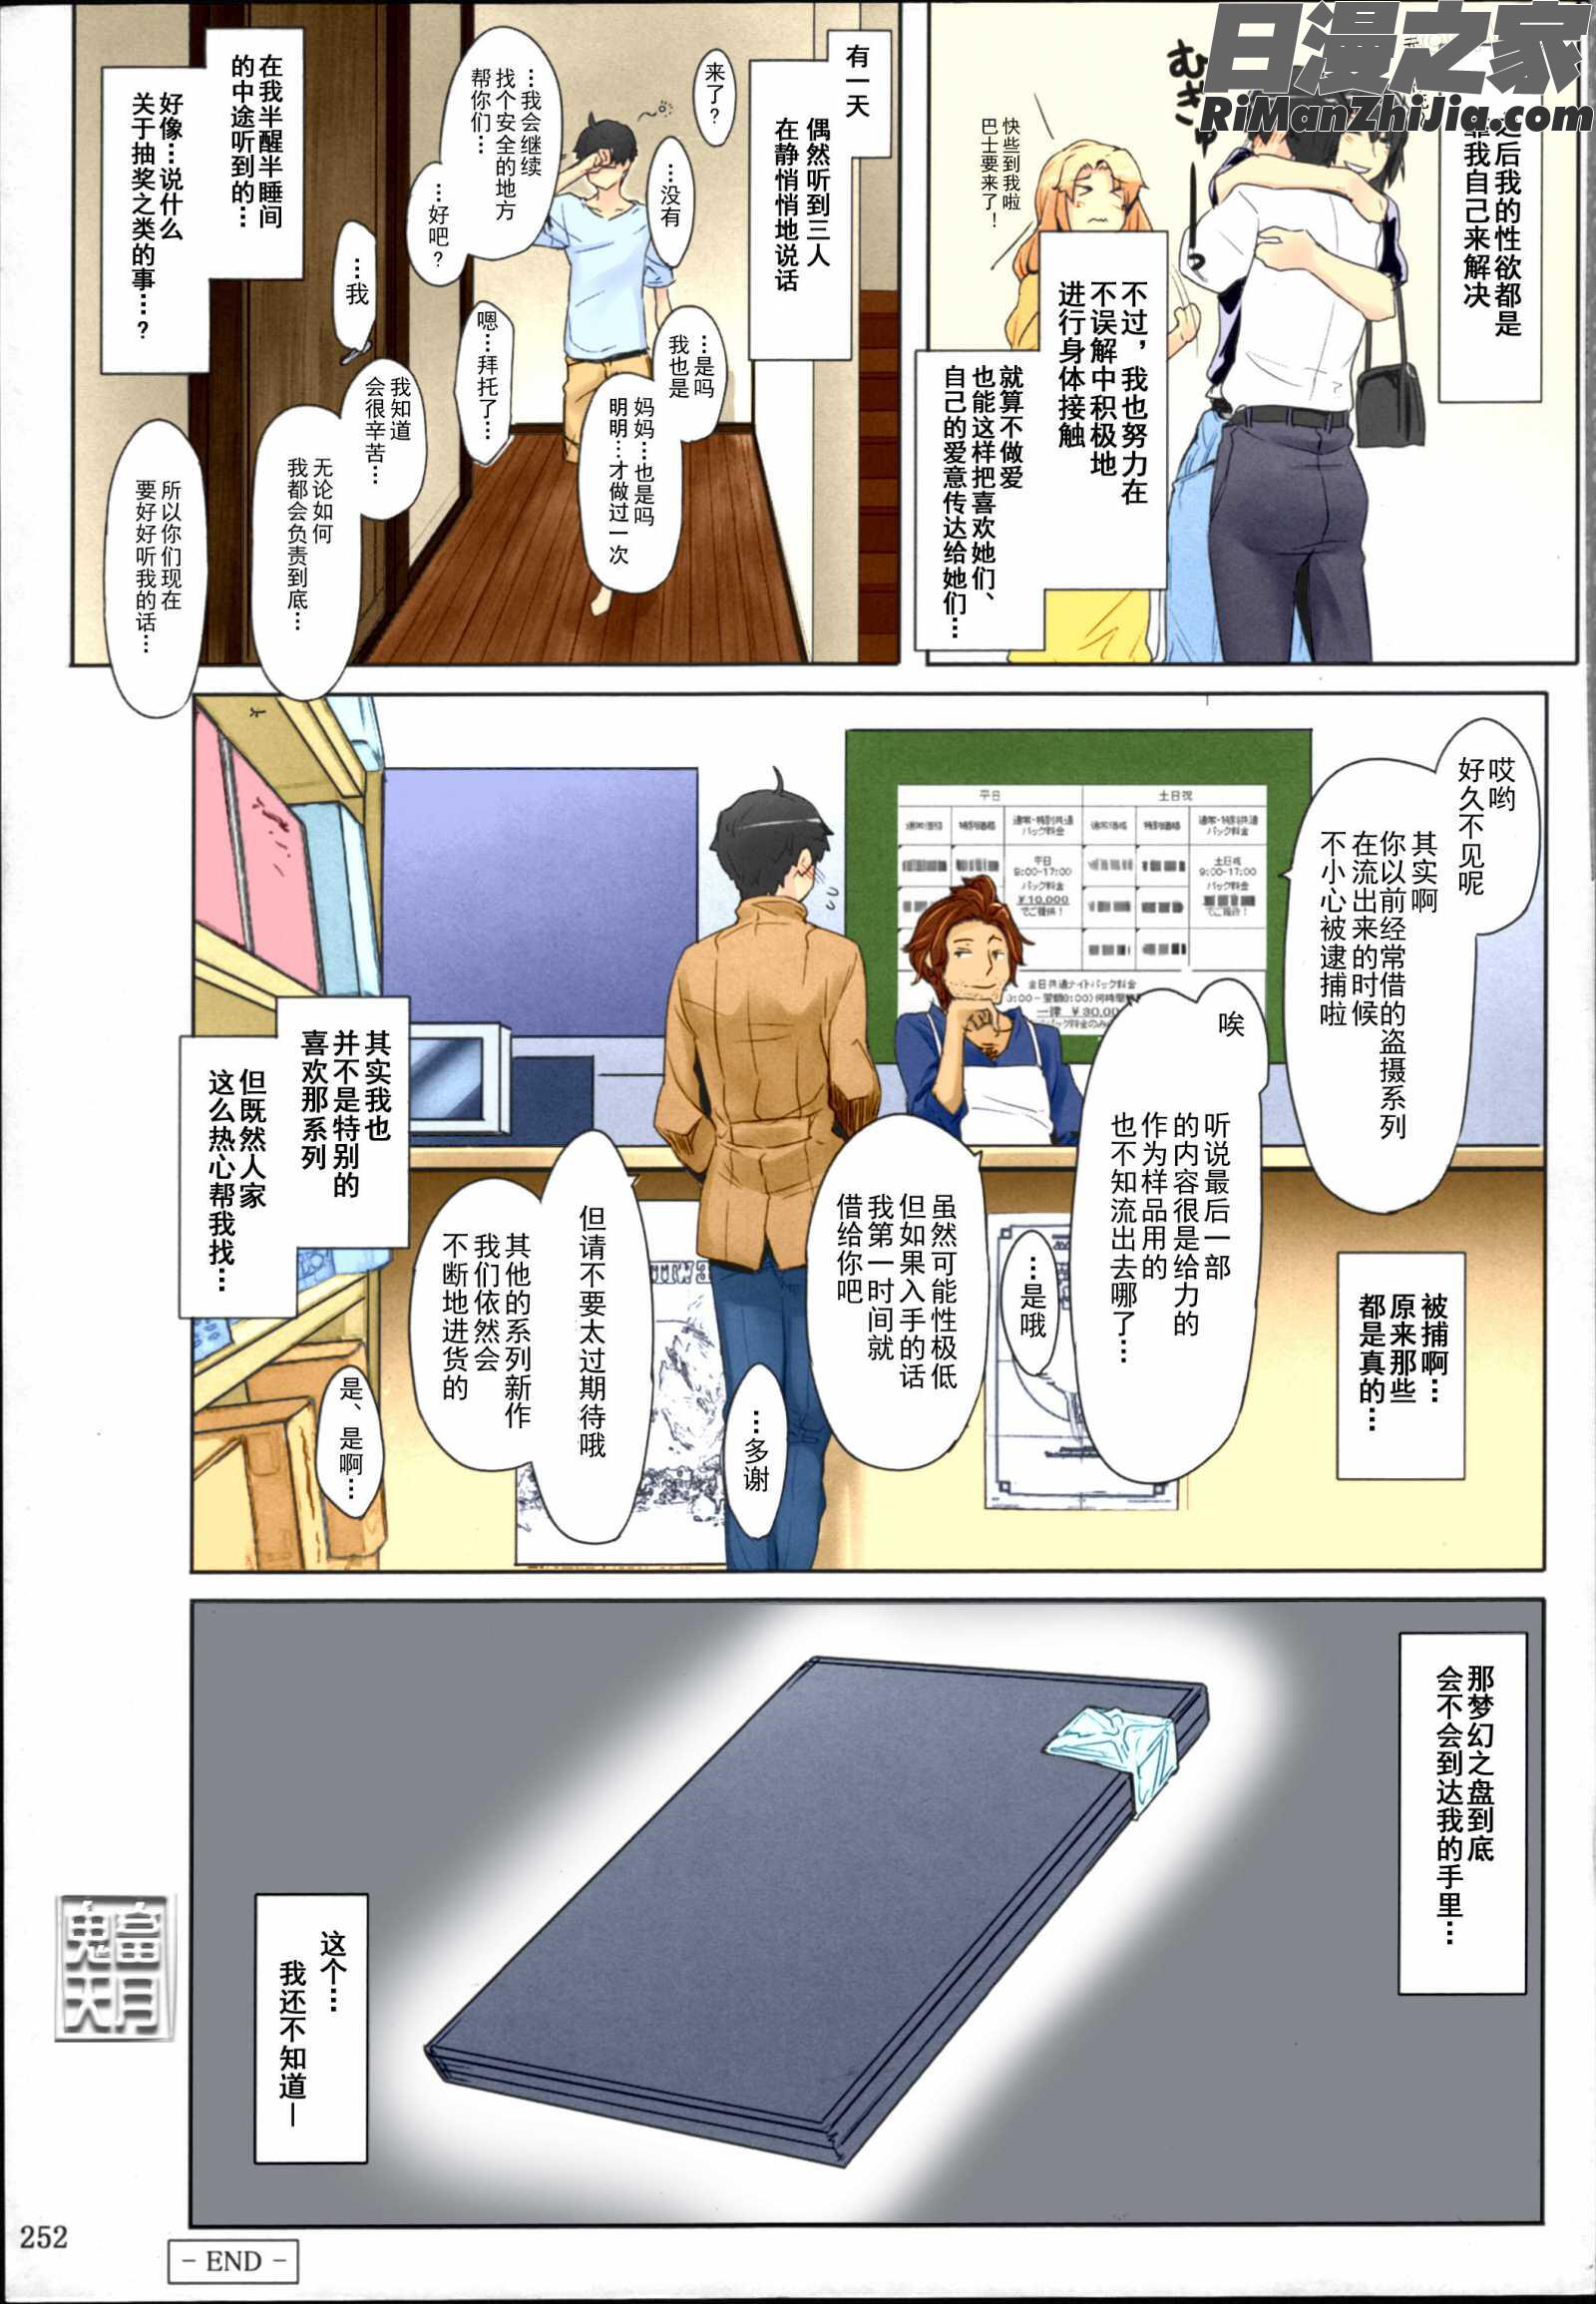 橘さん家ノ男性事情まとめ版漫画 免费阅读 整部漫画 254.jpg